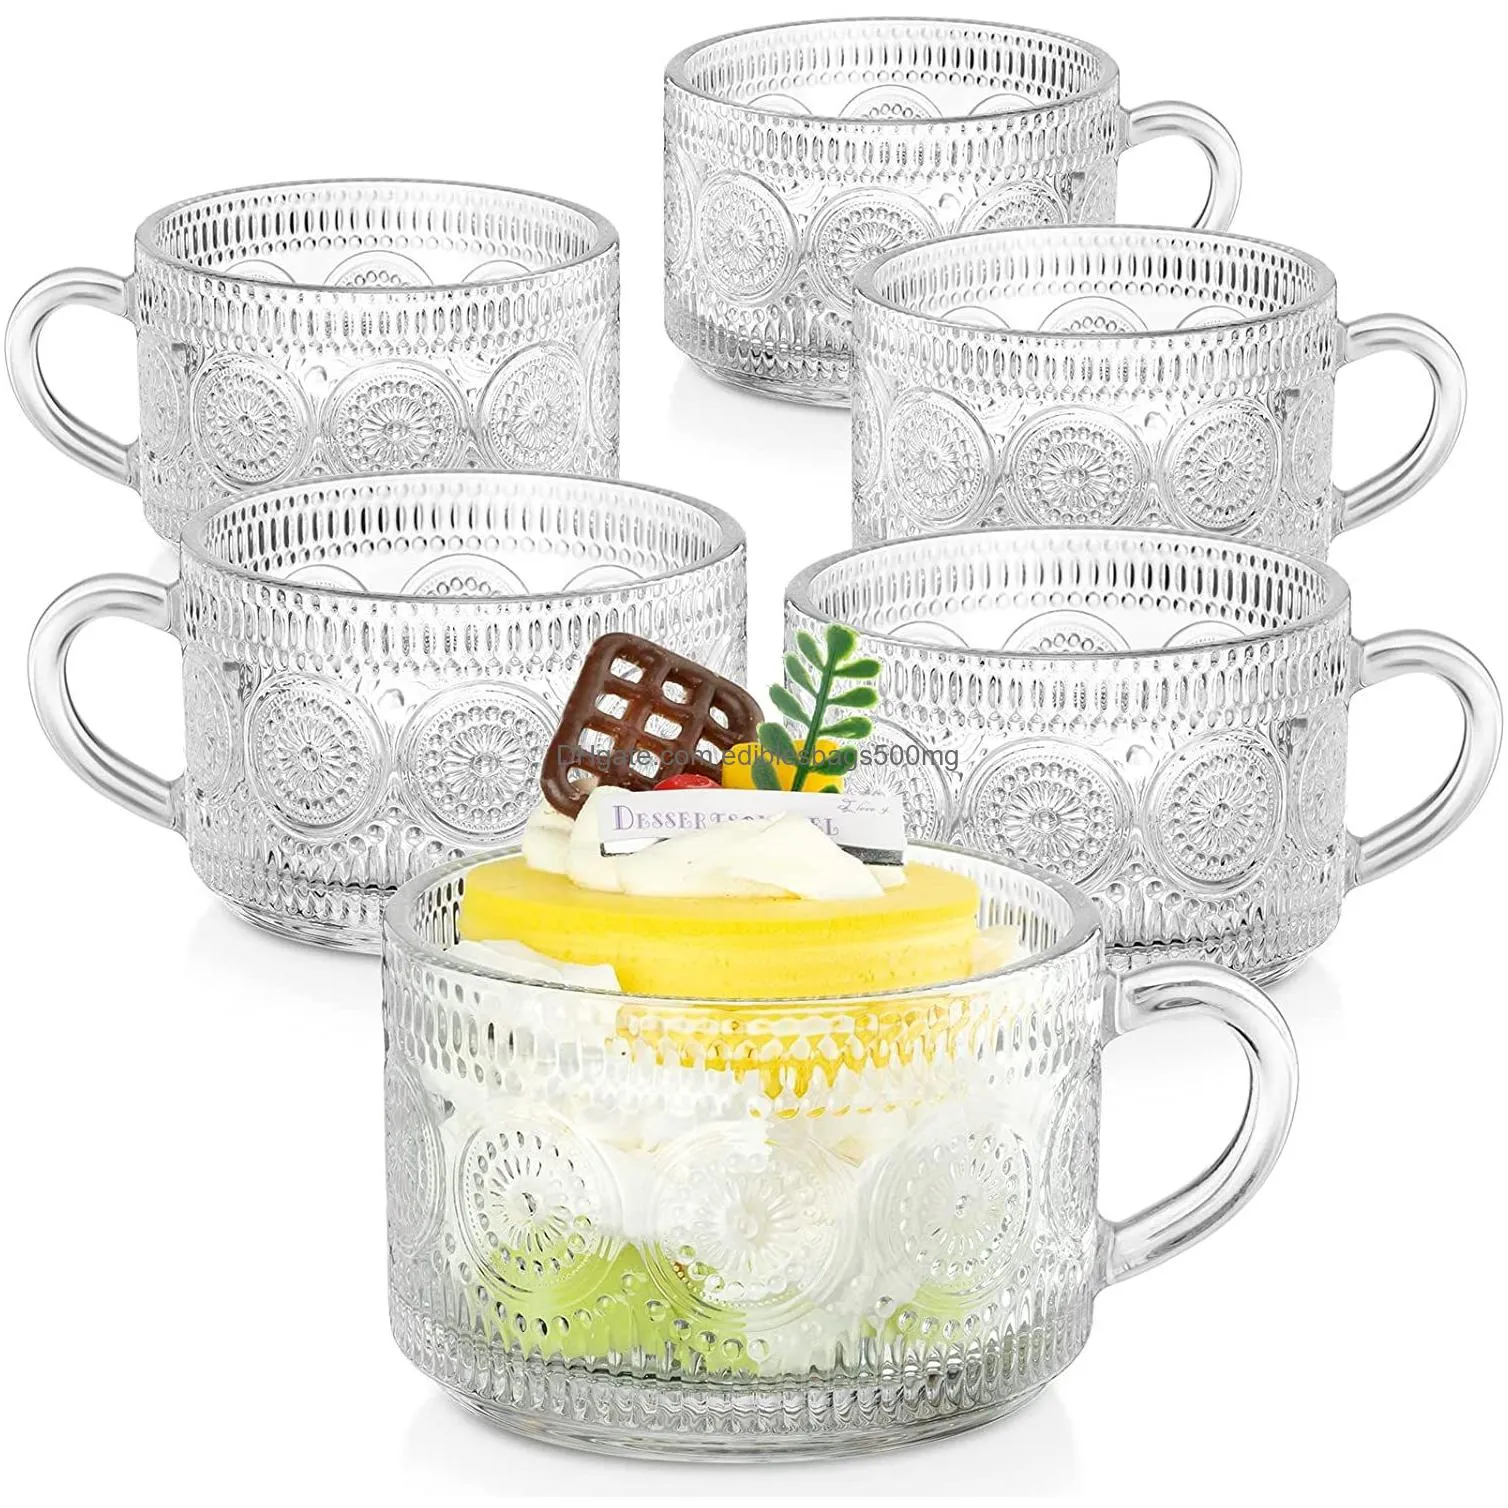 embossed pattern glass cup set delicate coffee water tea milk drinks mug large capacity breakfast cups drinking utensils glasses